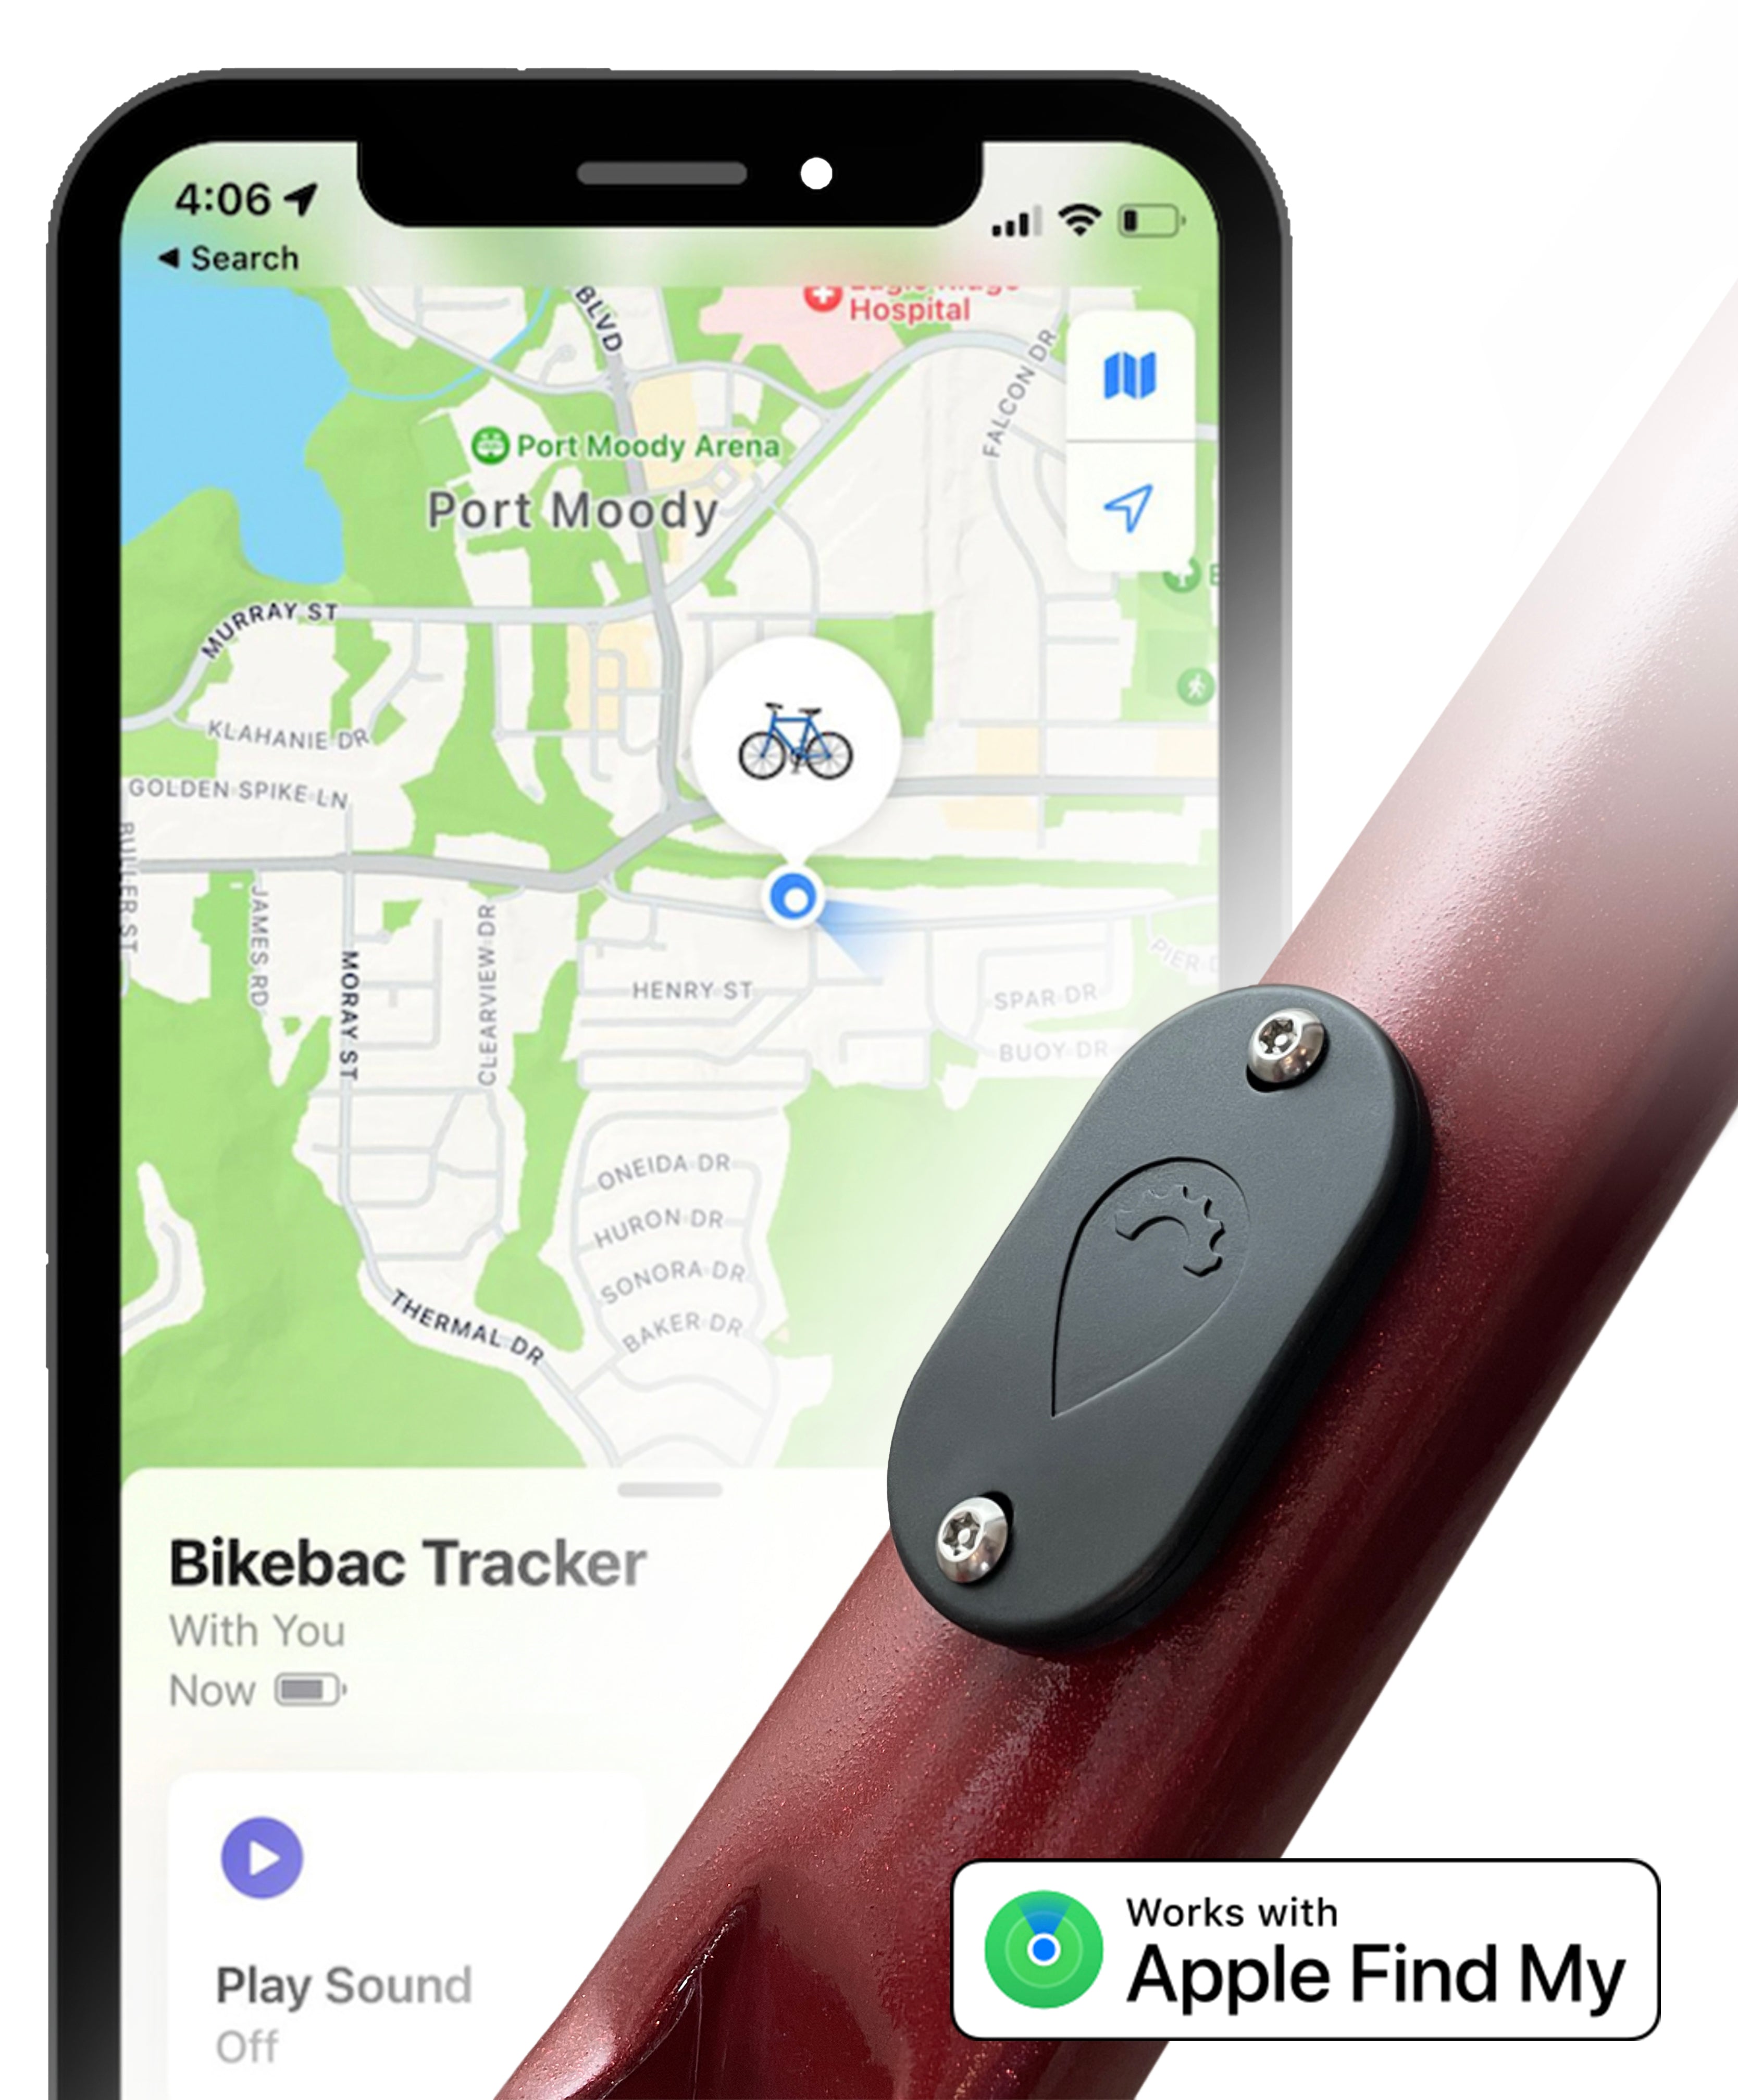 Bikebac Tracker